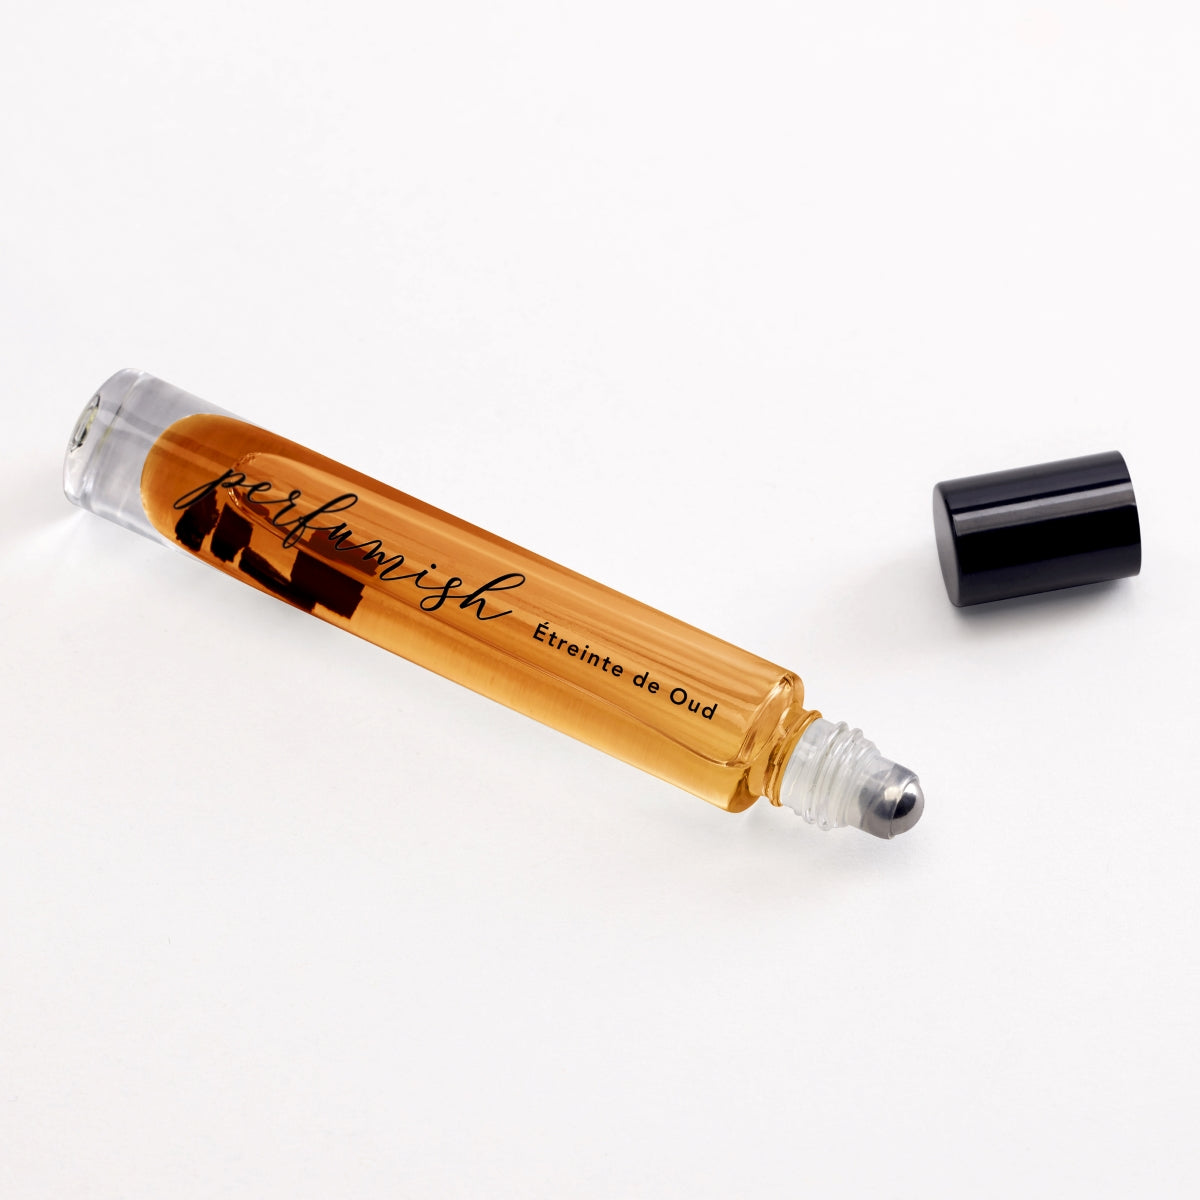 Oud Hug Unisex Roll-On Perfume Oil